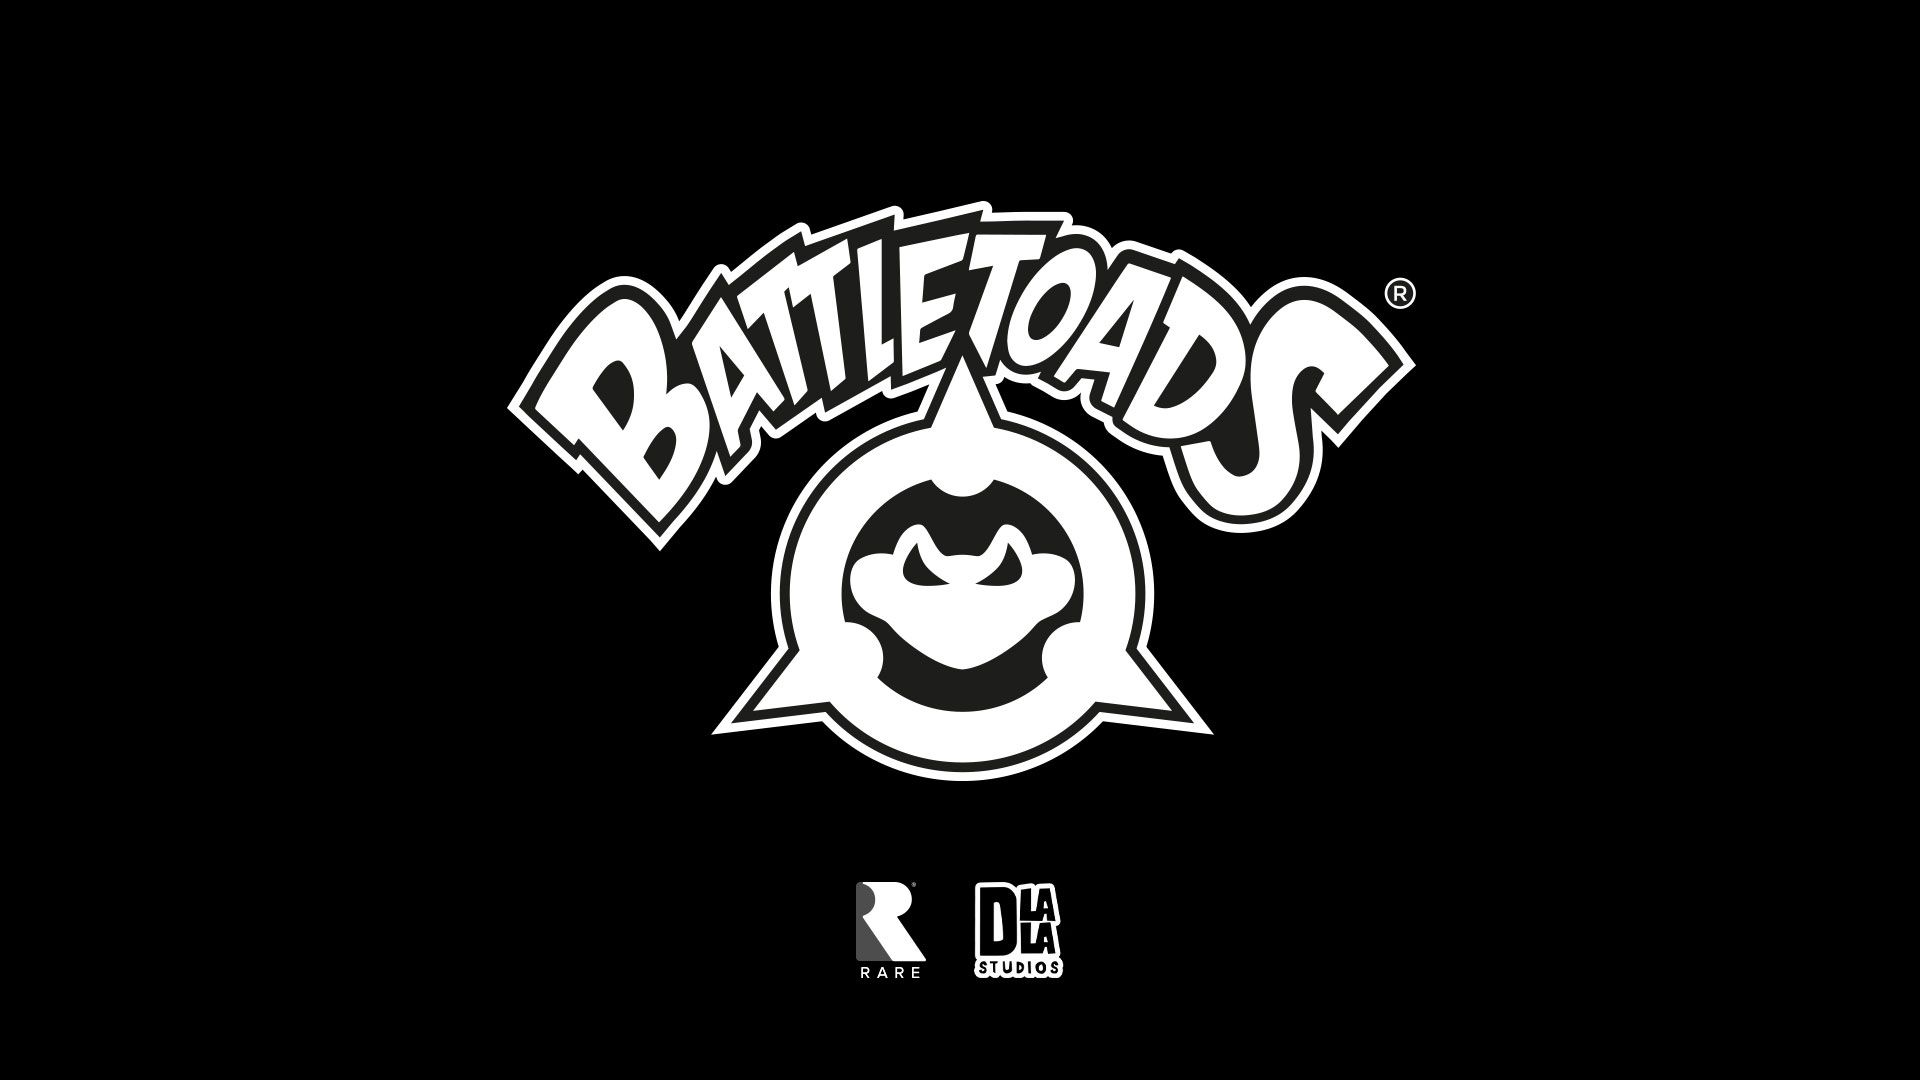 Battletoads (2019). Desktop wallpaper. 1920x1080